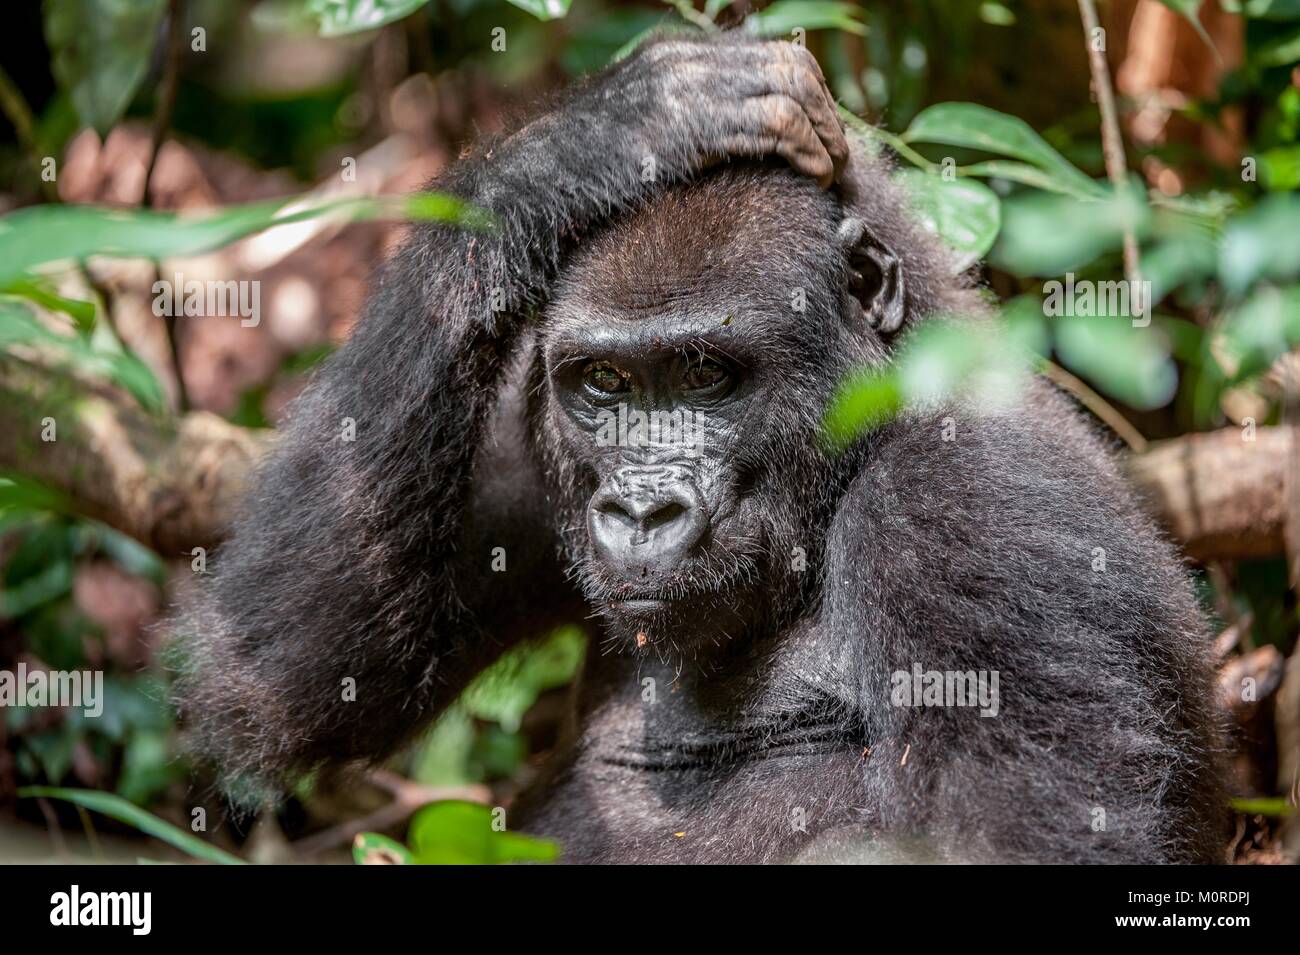 Ritratto di una pianura occidentale (gorilla Gorilla gorilla gorilla) chiudere fino a breve distanza. femmina adulta di un gorilla in un habitat naturale. Giungla Foto Stock